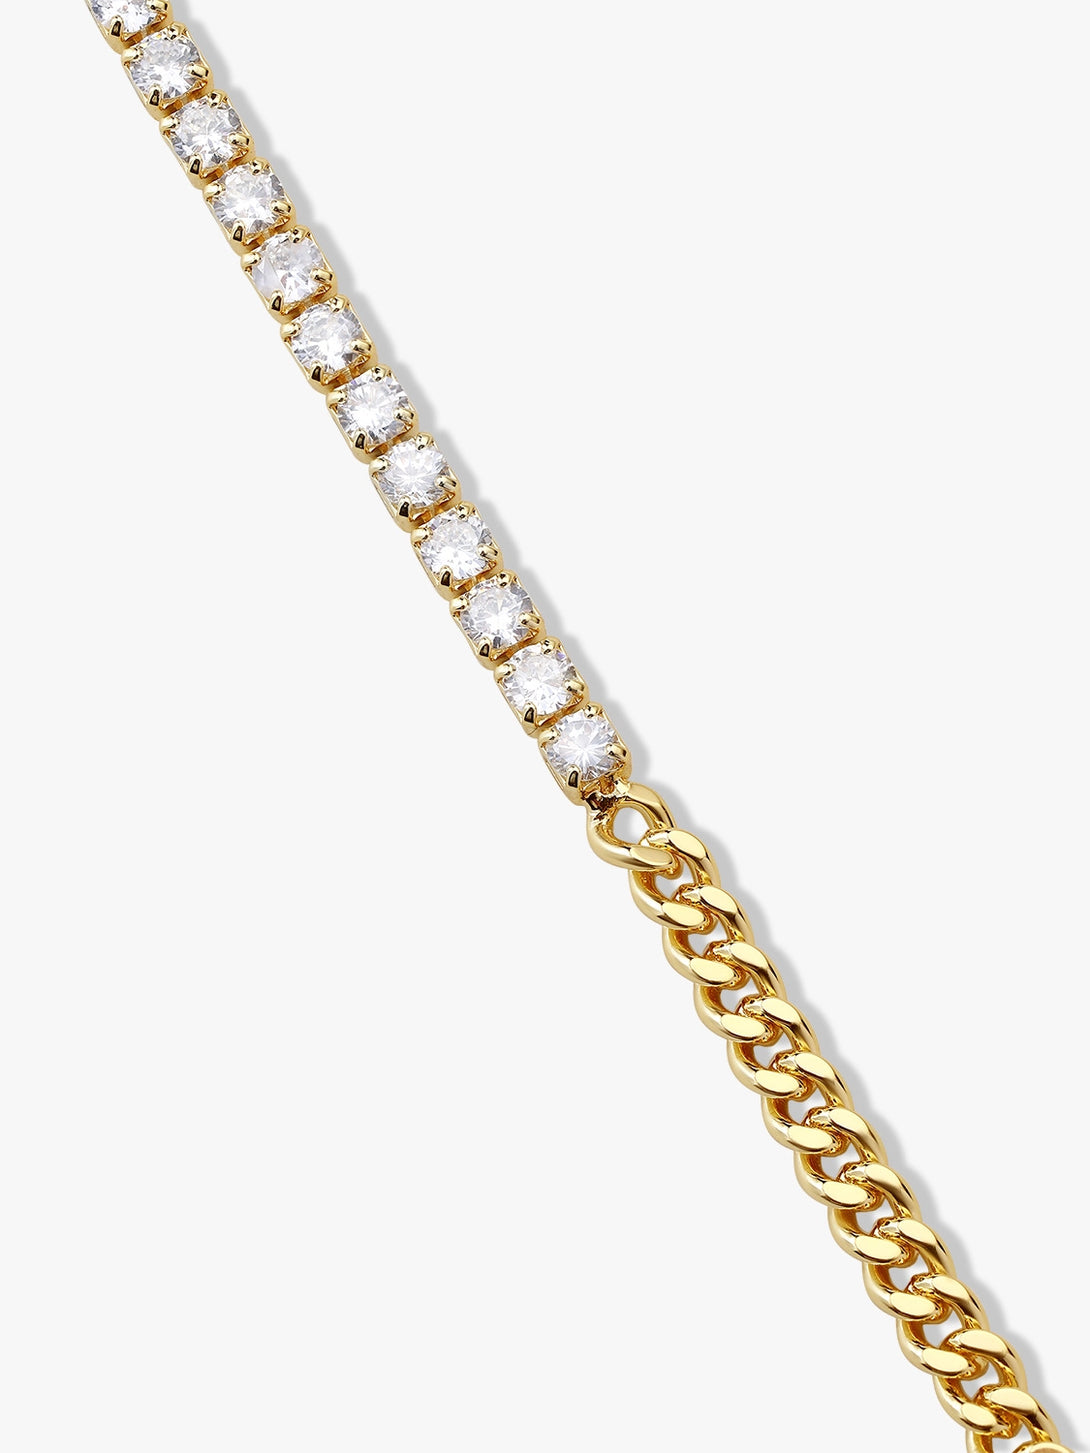 Delicate Herringbone Bracelet - OOTDY